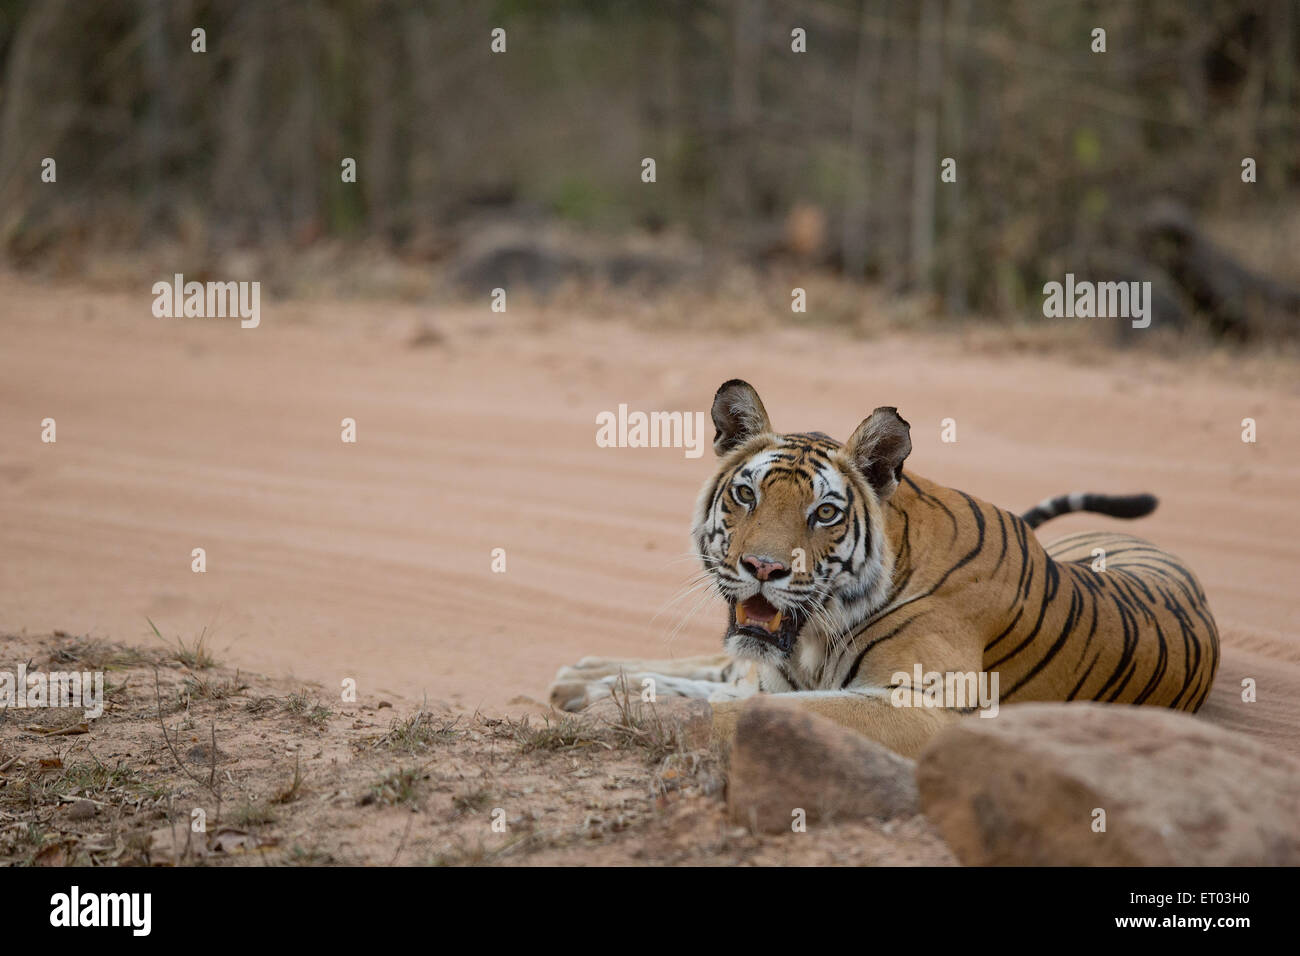 Tigre du Bengale Royal assis sur piste en forêt dans le Parc National de Bandhavgarh en Inde Banque D'Images